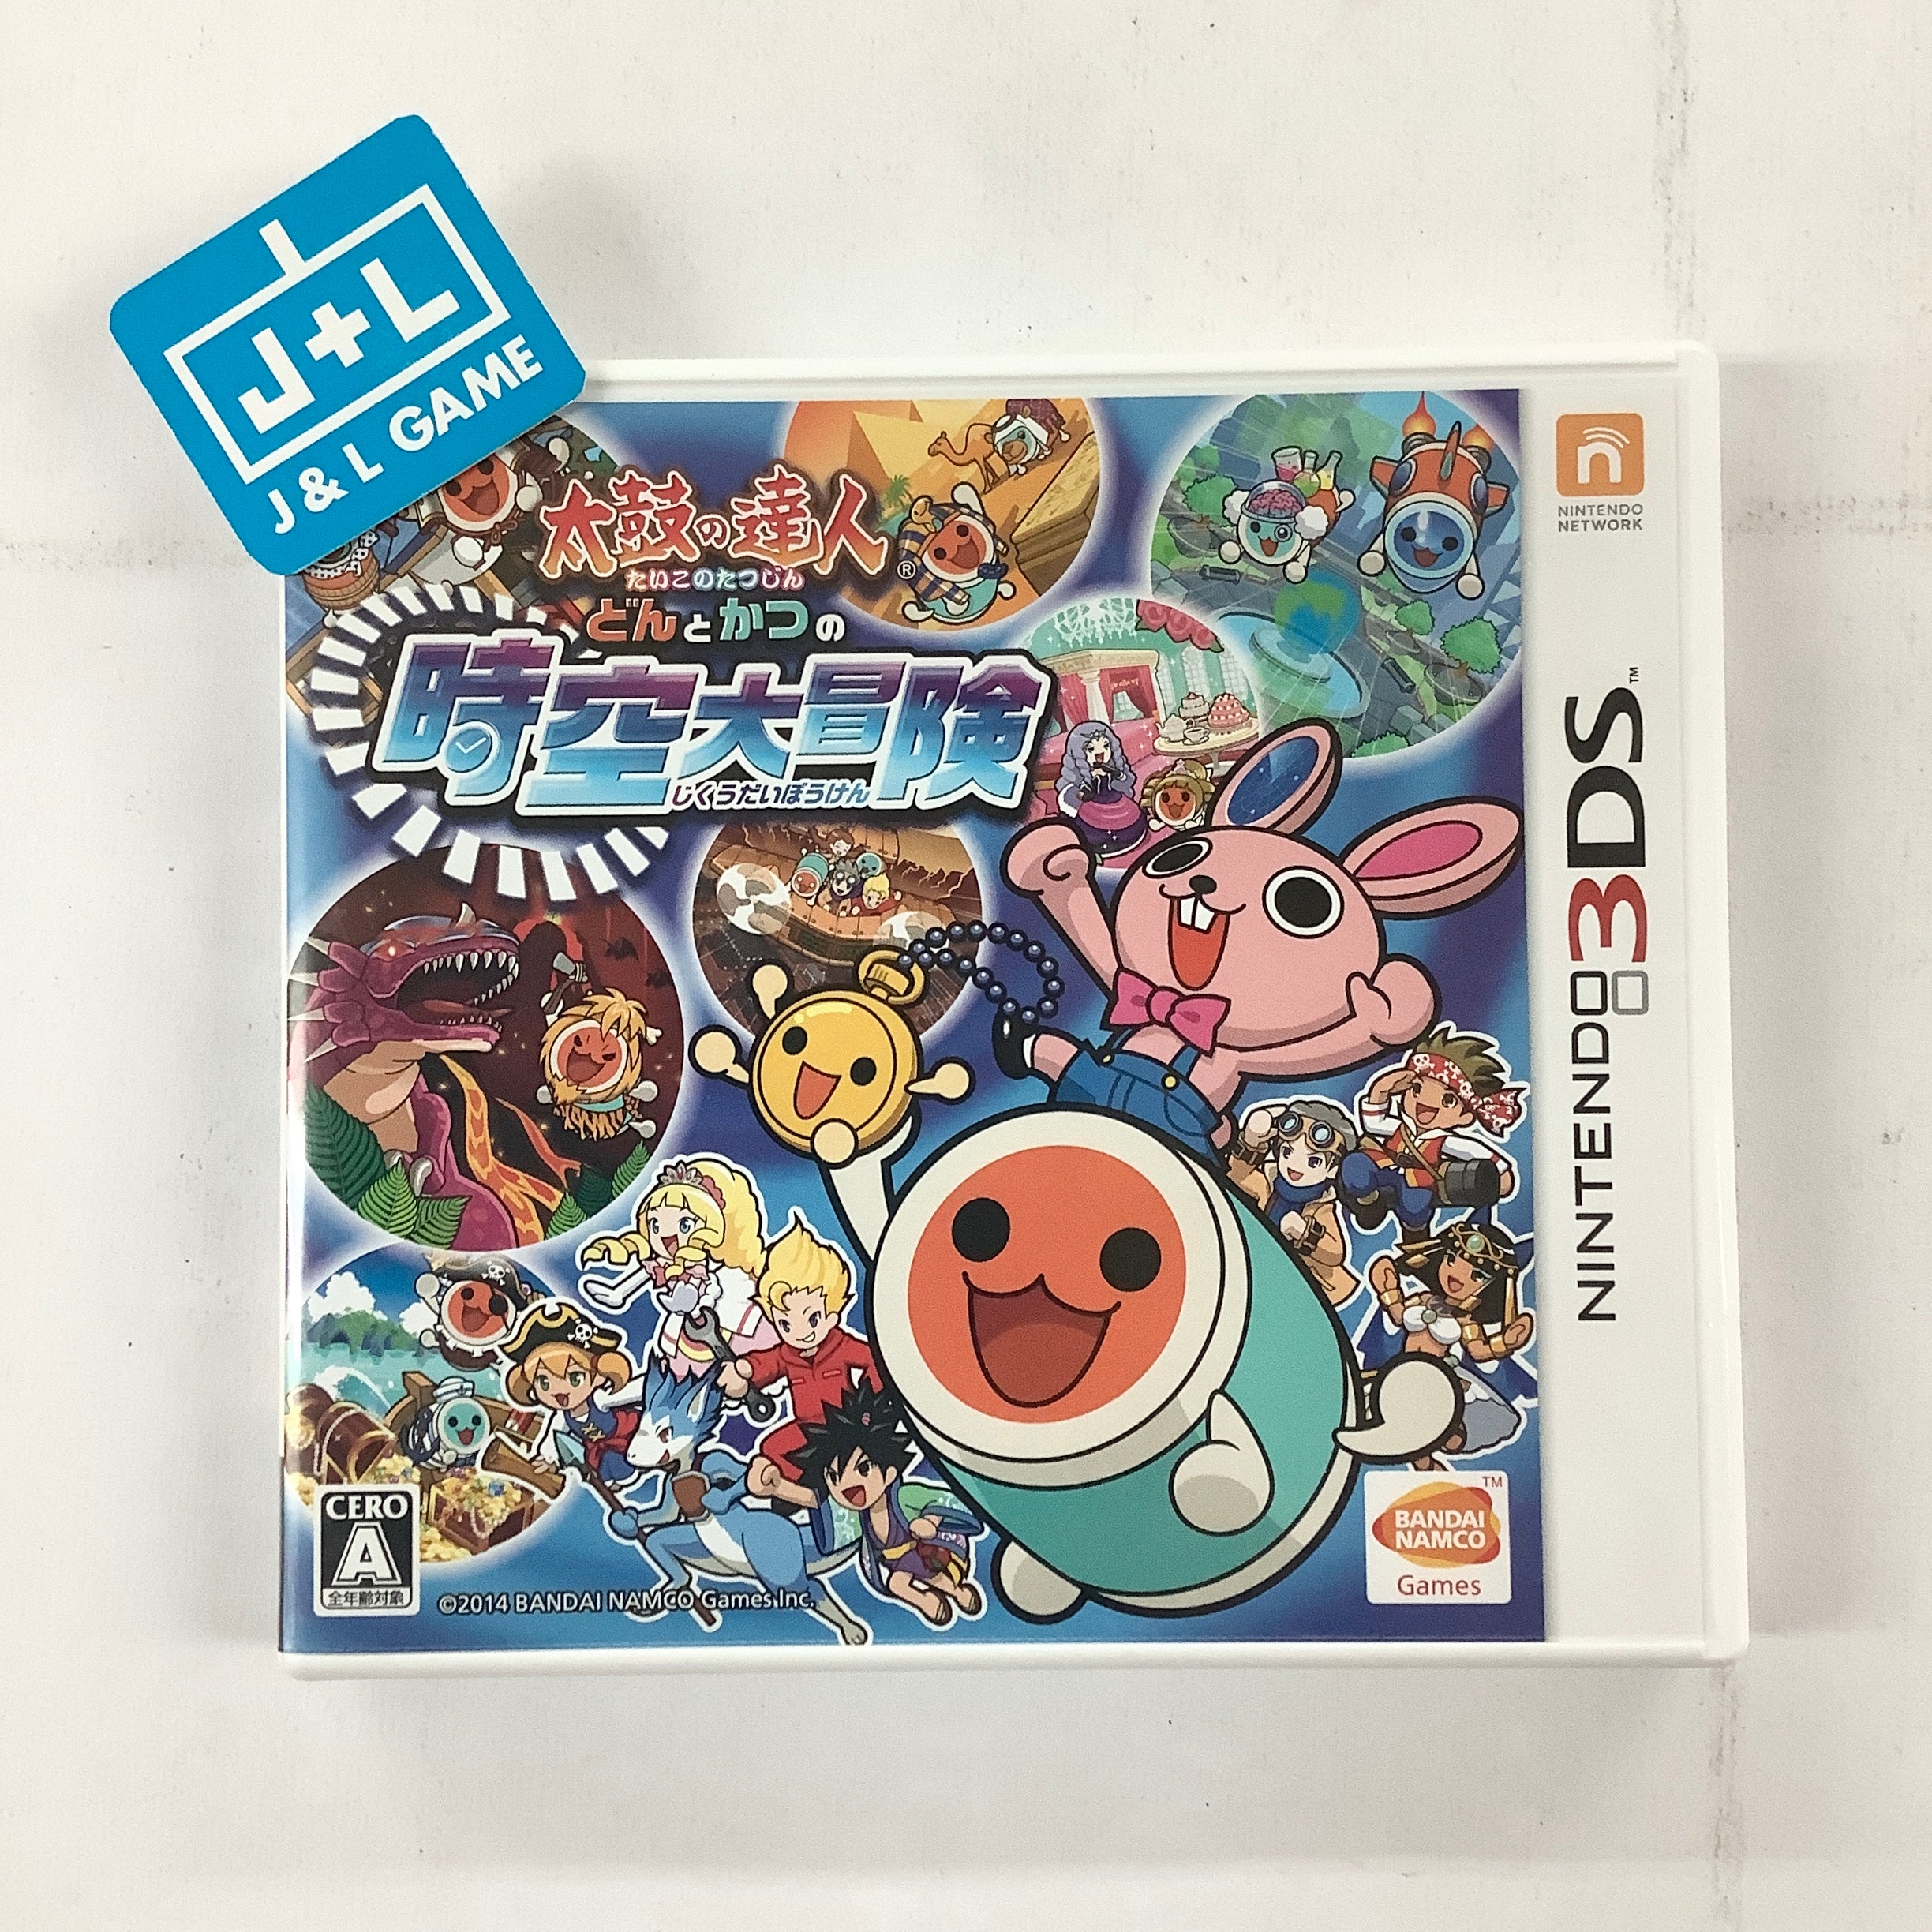 Taiko no Tatsujin: Don to Katsu no Jikuu Daibouken - Nintendo 3DS [Pre-Owned] (Japanese Import) Video Games Bandai Namco Games   